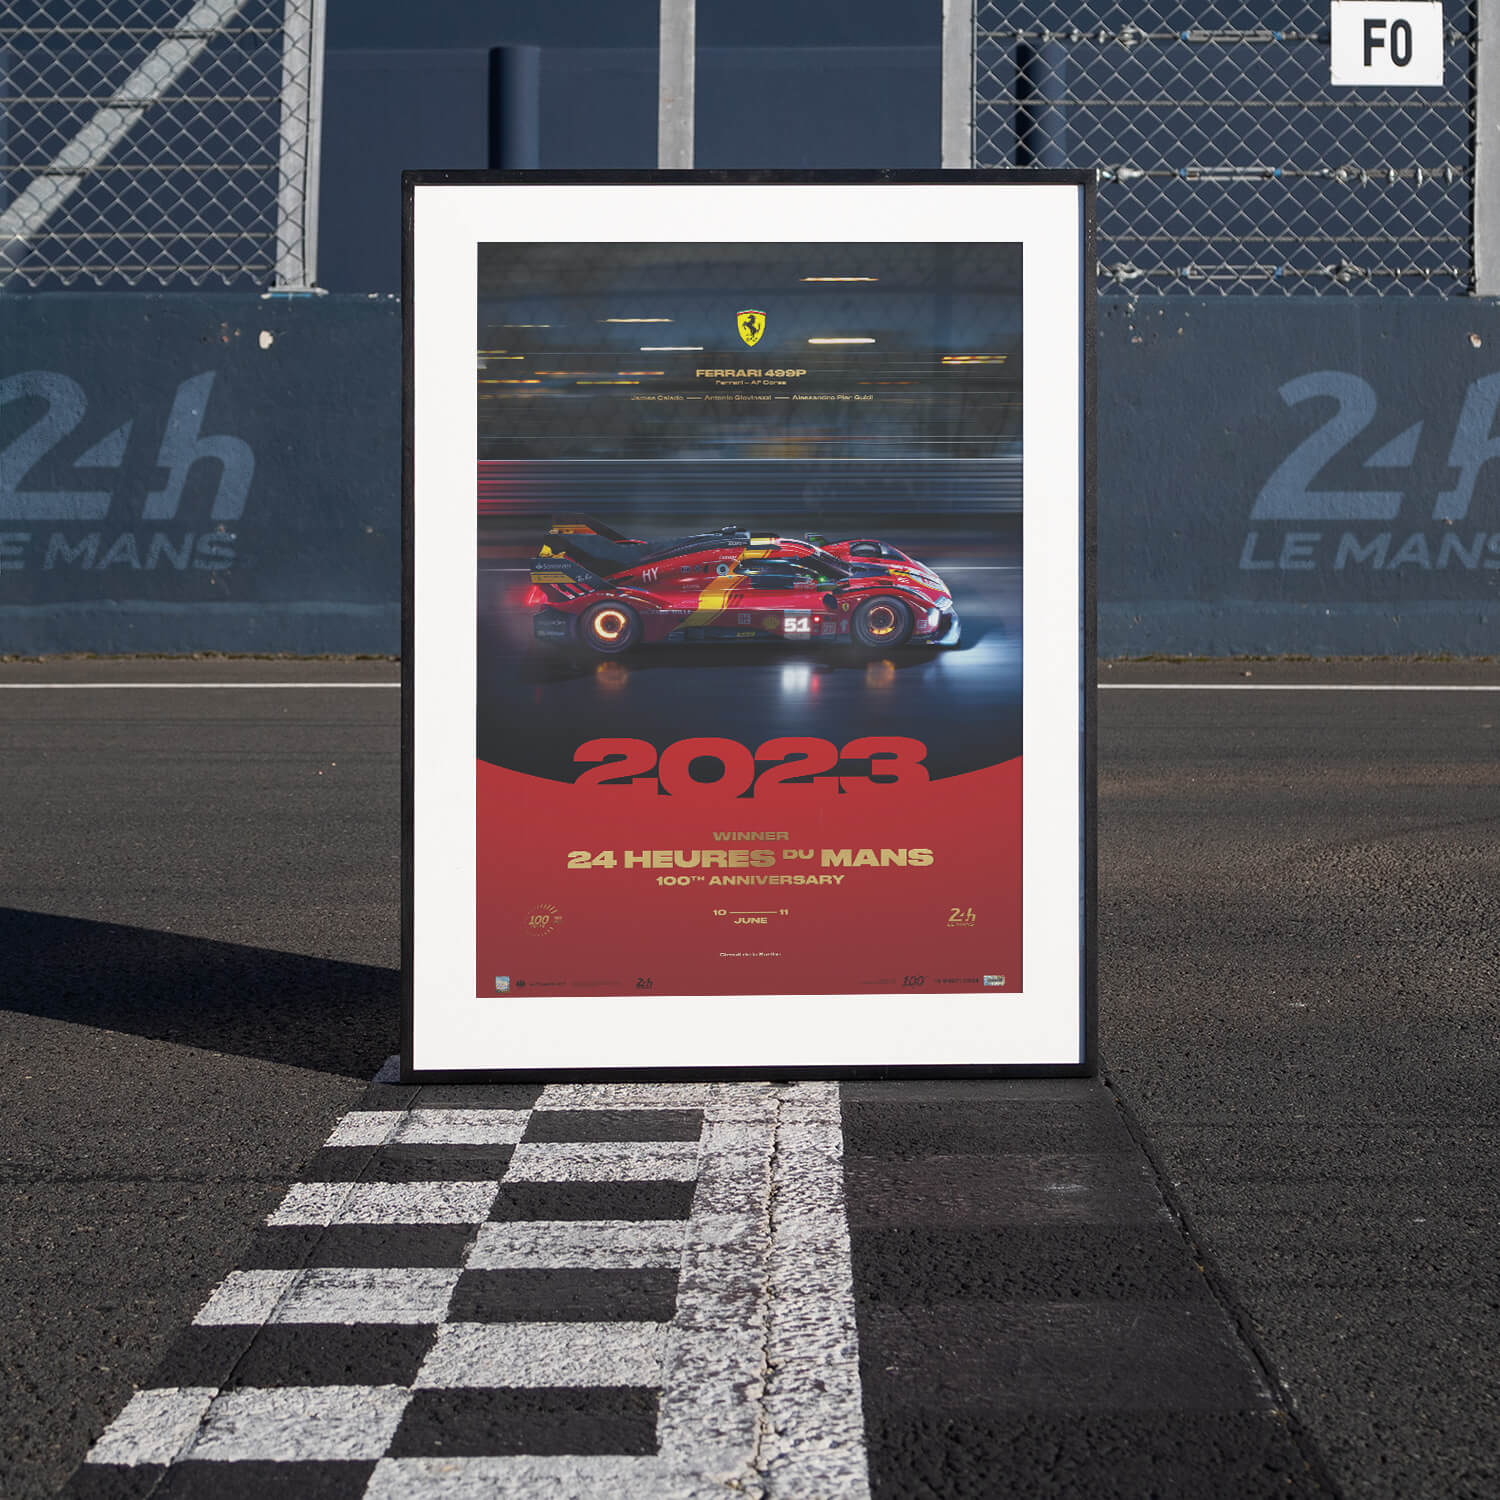 Ferrari 499P - Vainqueurs des 24h du Mans - 100ème Anniversaire - 2023